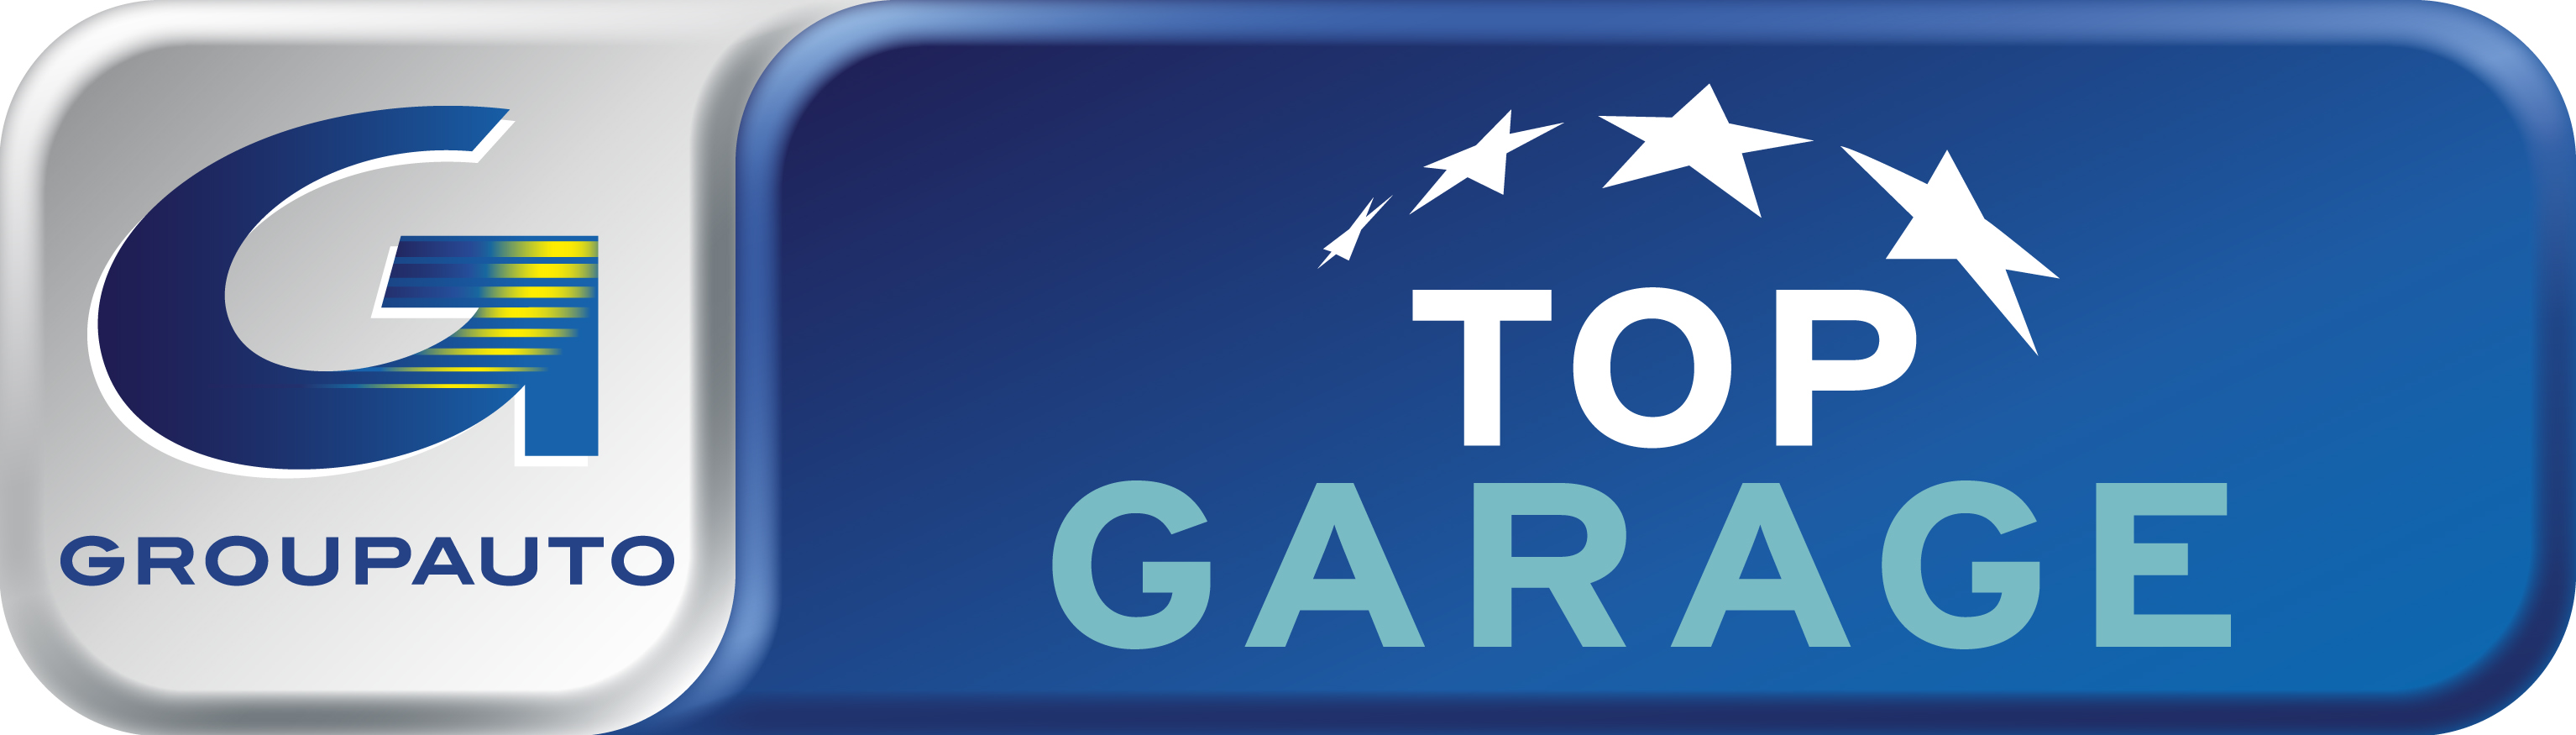 Top Garage - Garage Des Pavillons logo